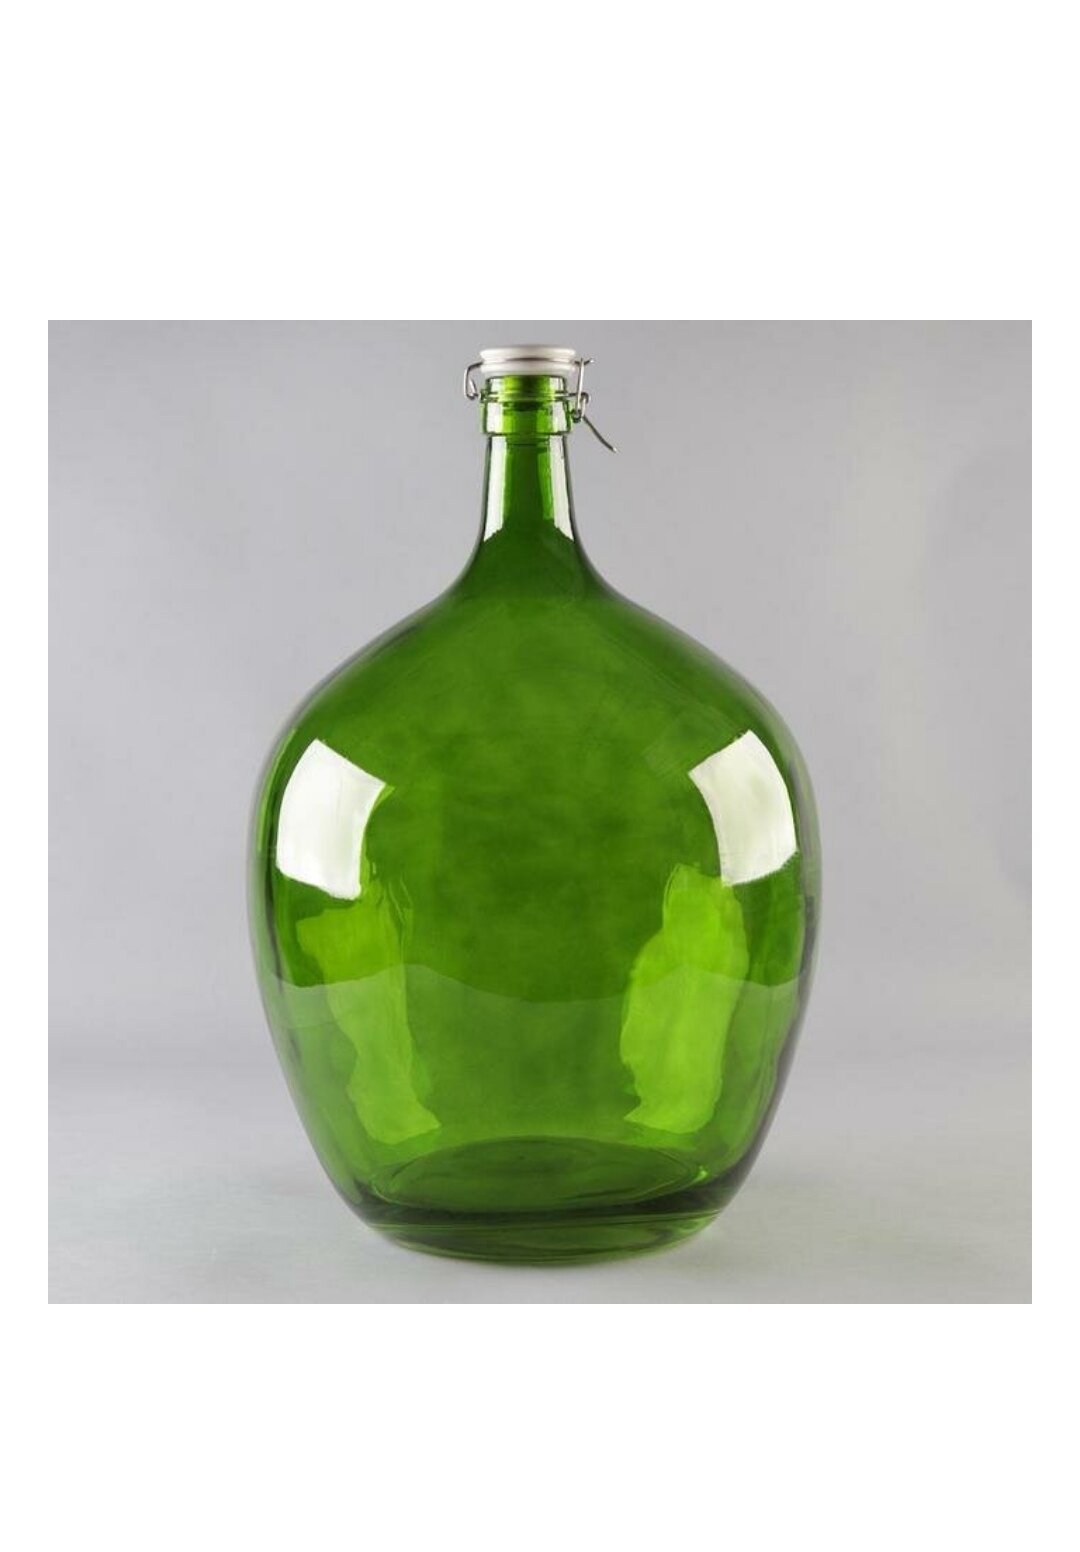 Бутылка 25 литров с бугельной керамической крышкой из зеленого, коричневого, темного матового стекла